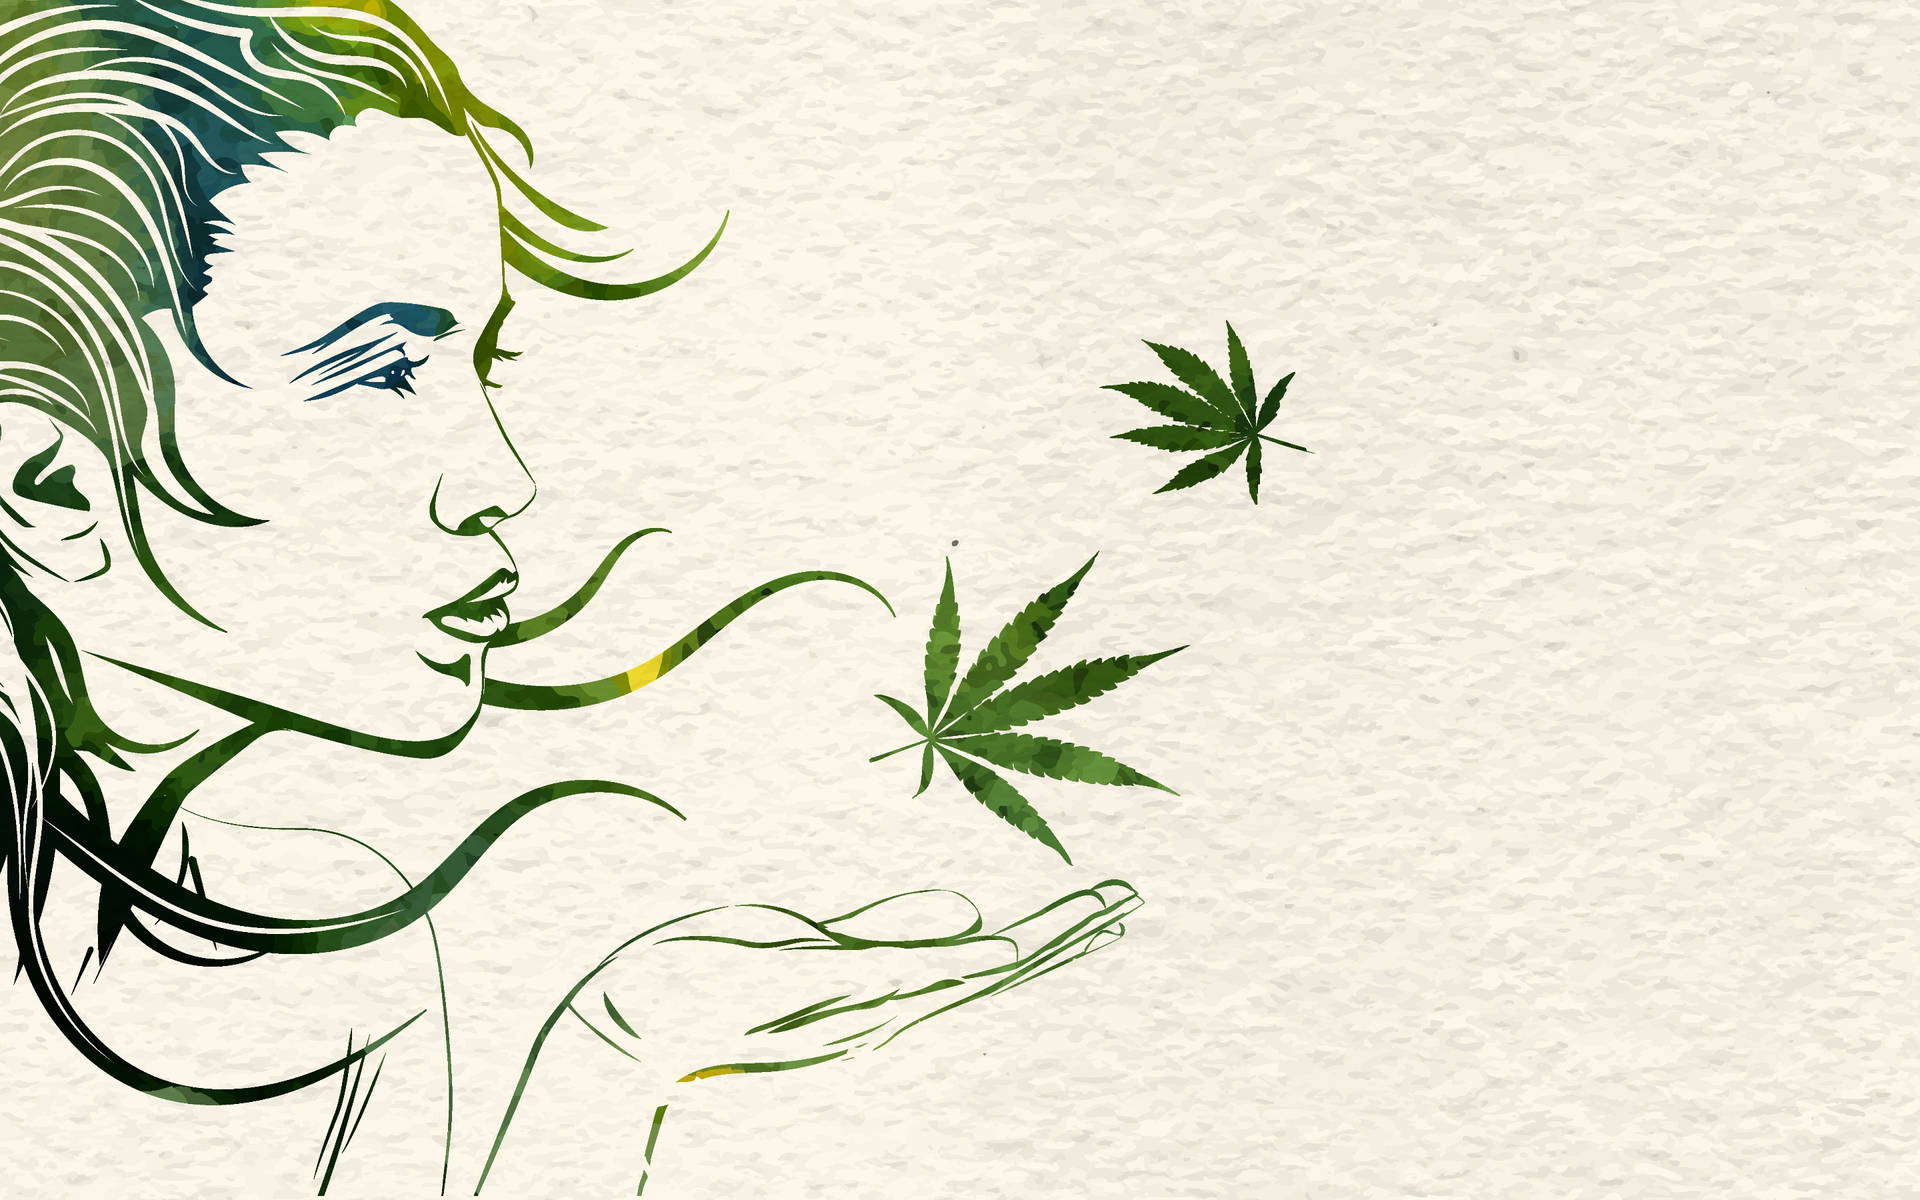 Digital Art Promo For Smoking Weed Wallpaper